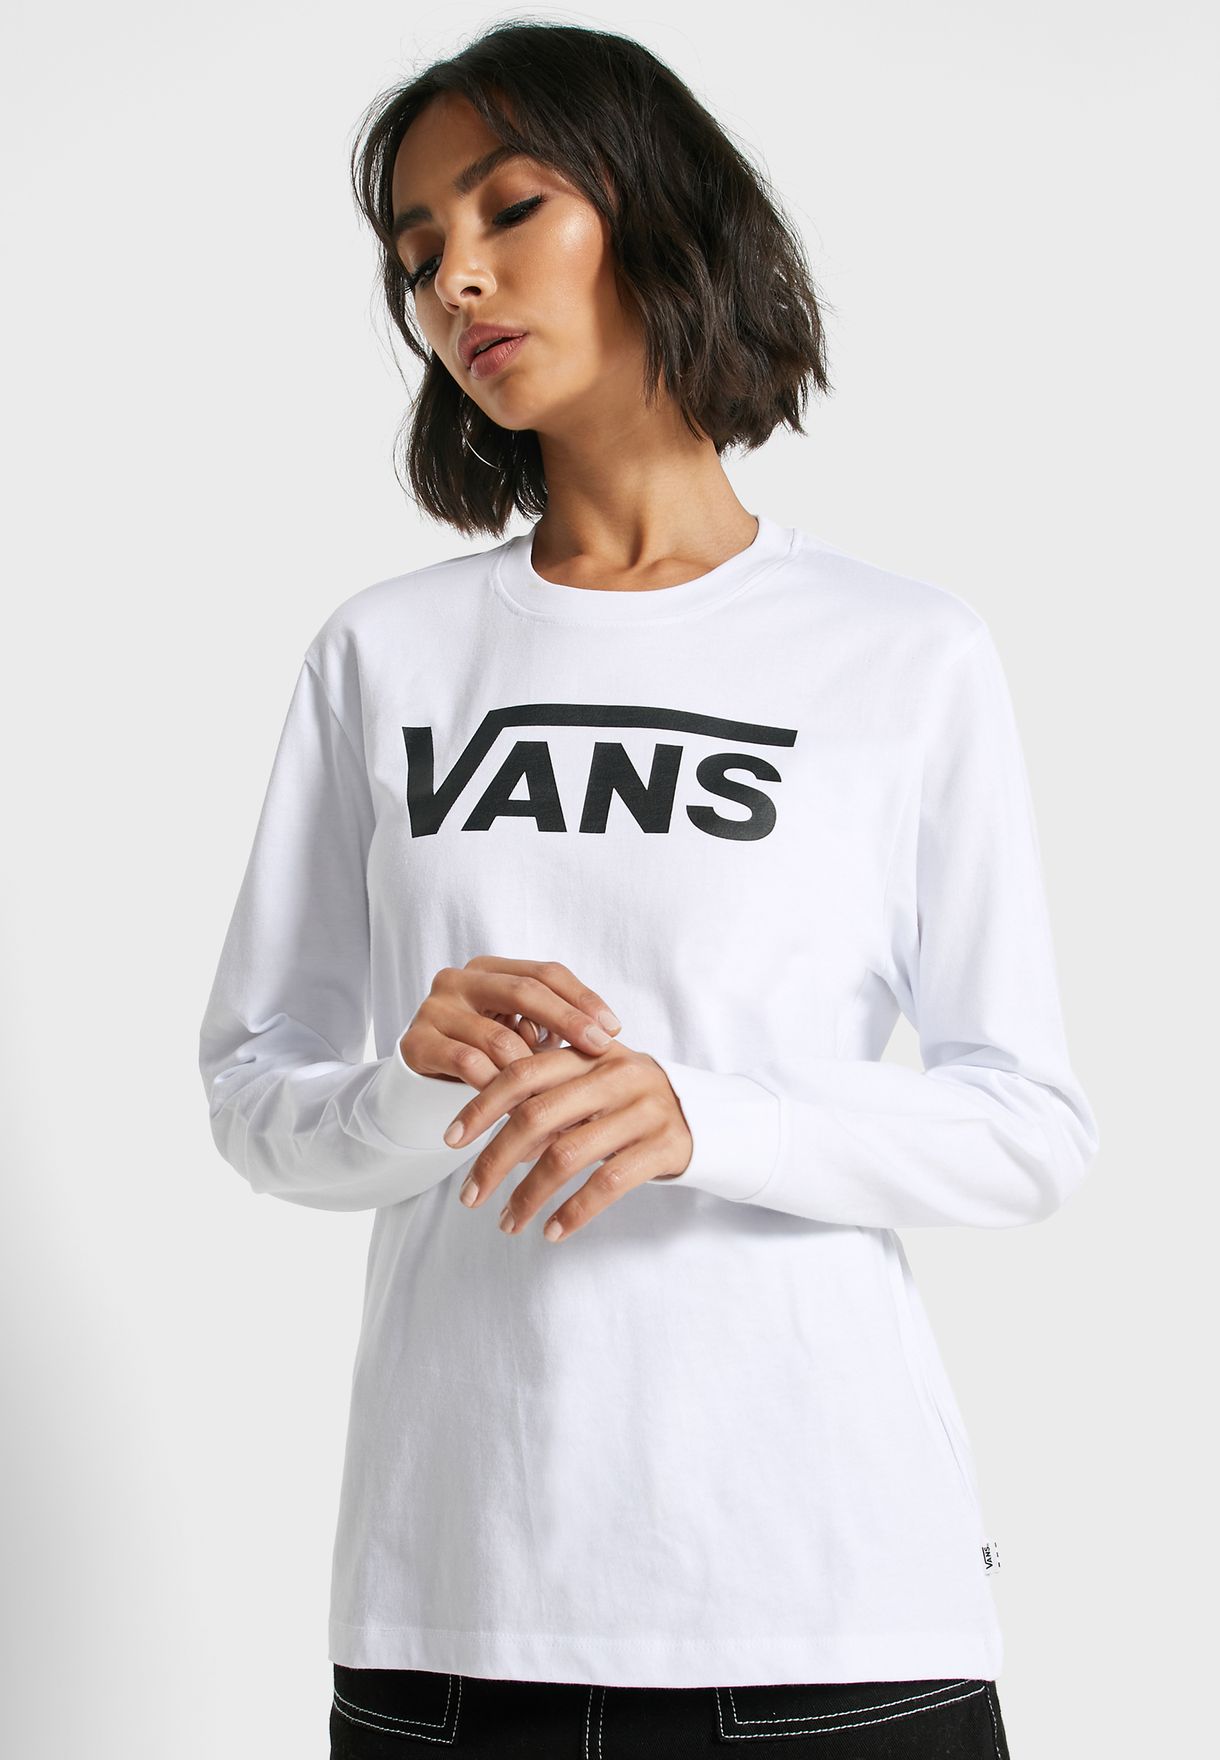 vans white shirt womens